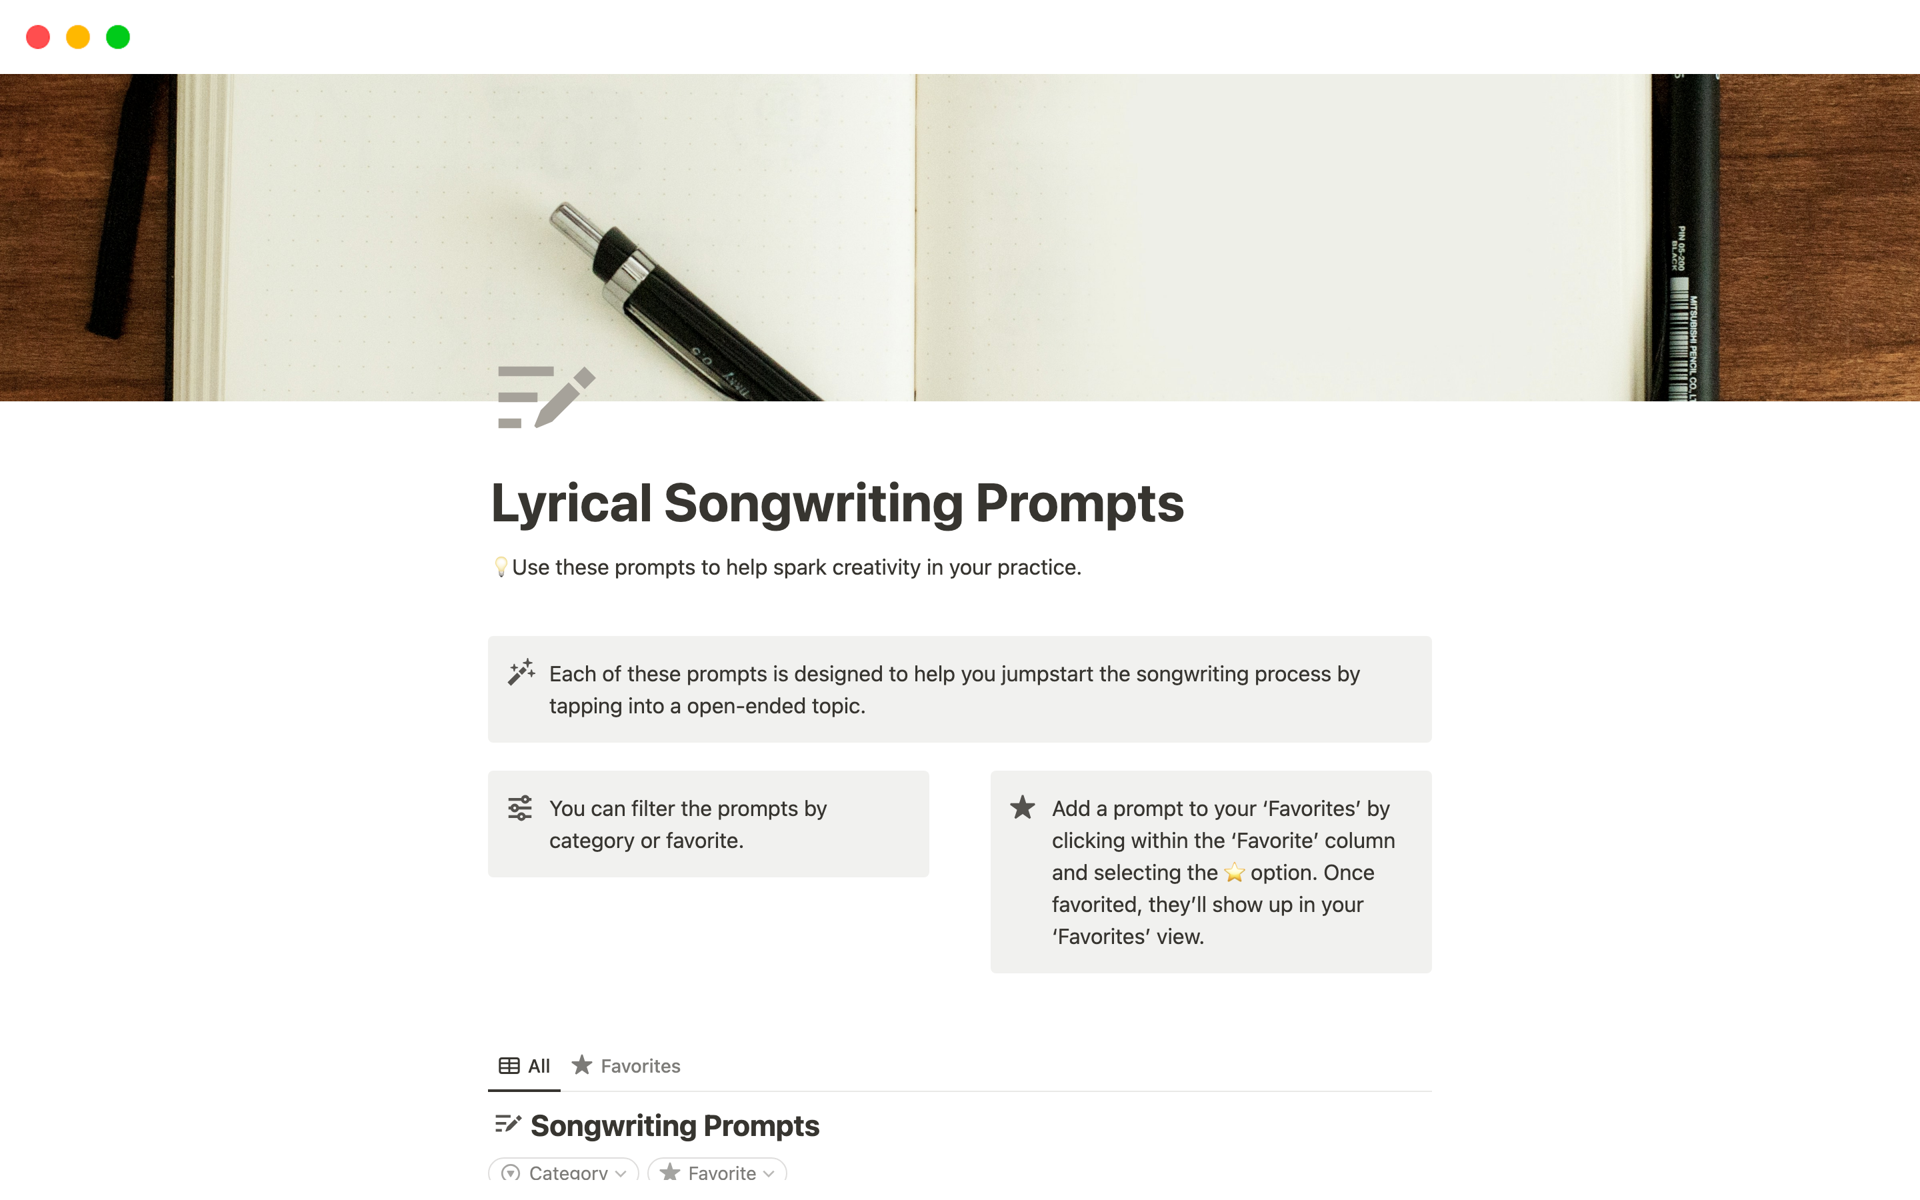 Uma prévia do modelo para Lyrical Songwriting Prompts